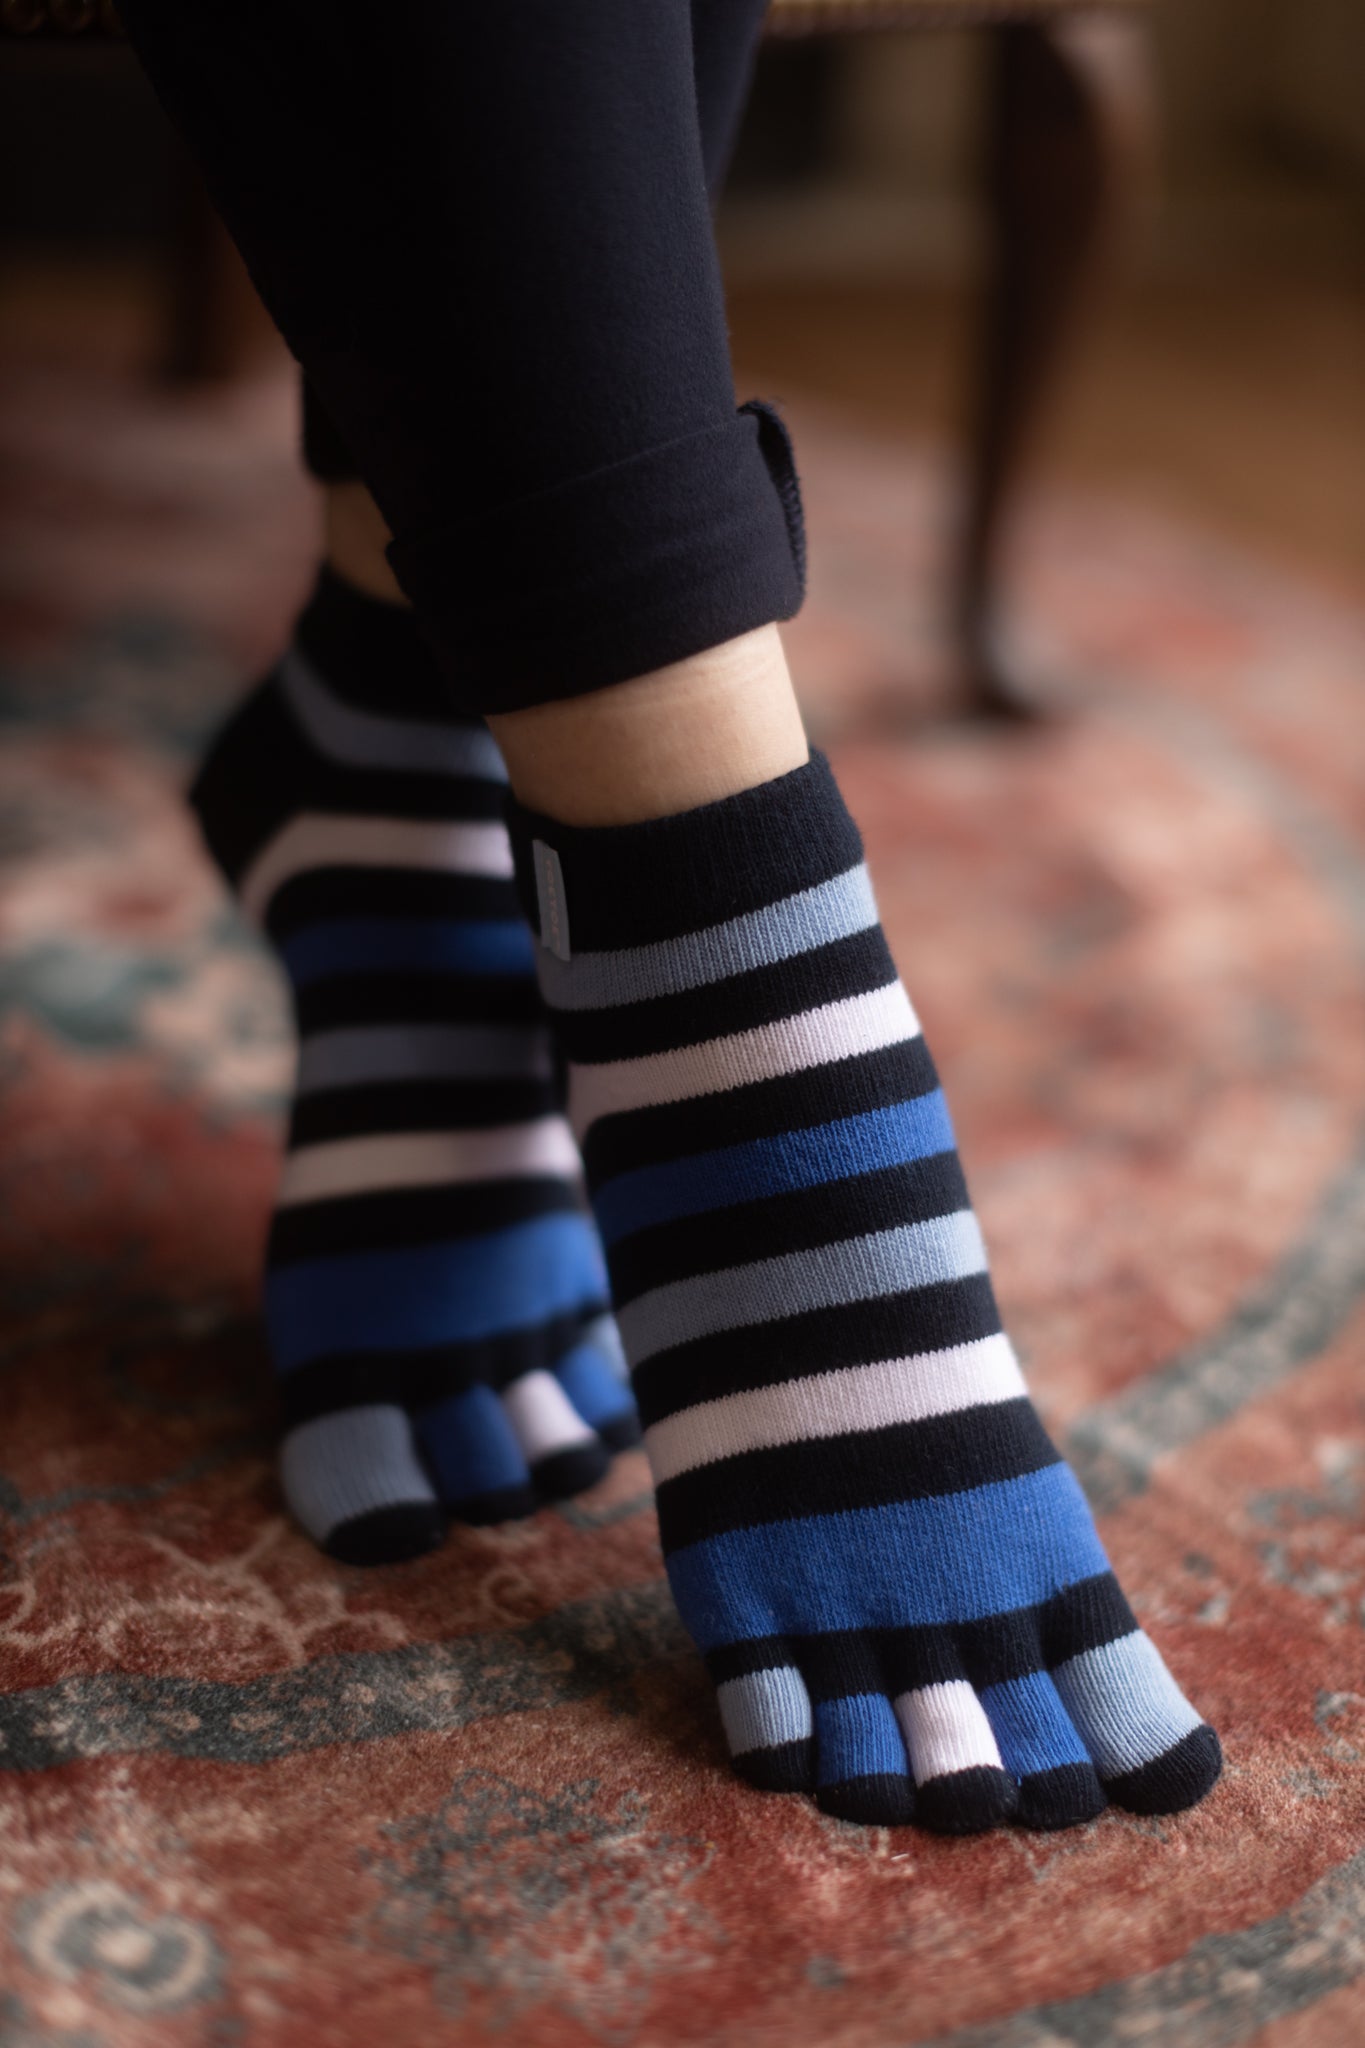 https://sockdreams.com/cdn/shop/files/TT-ANK-STRIPE-506007248-Blue-Striped-Anklet-toe-socks-NN-OT-3.jpg?v=1698349912&width=1365